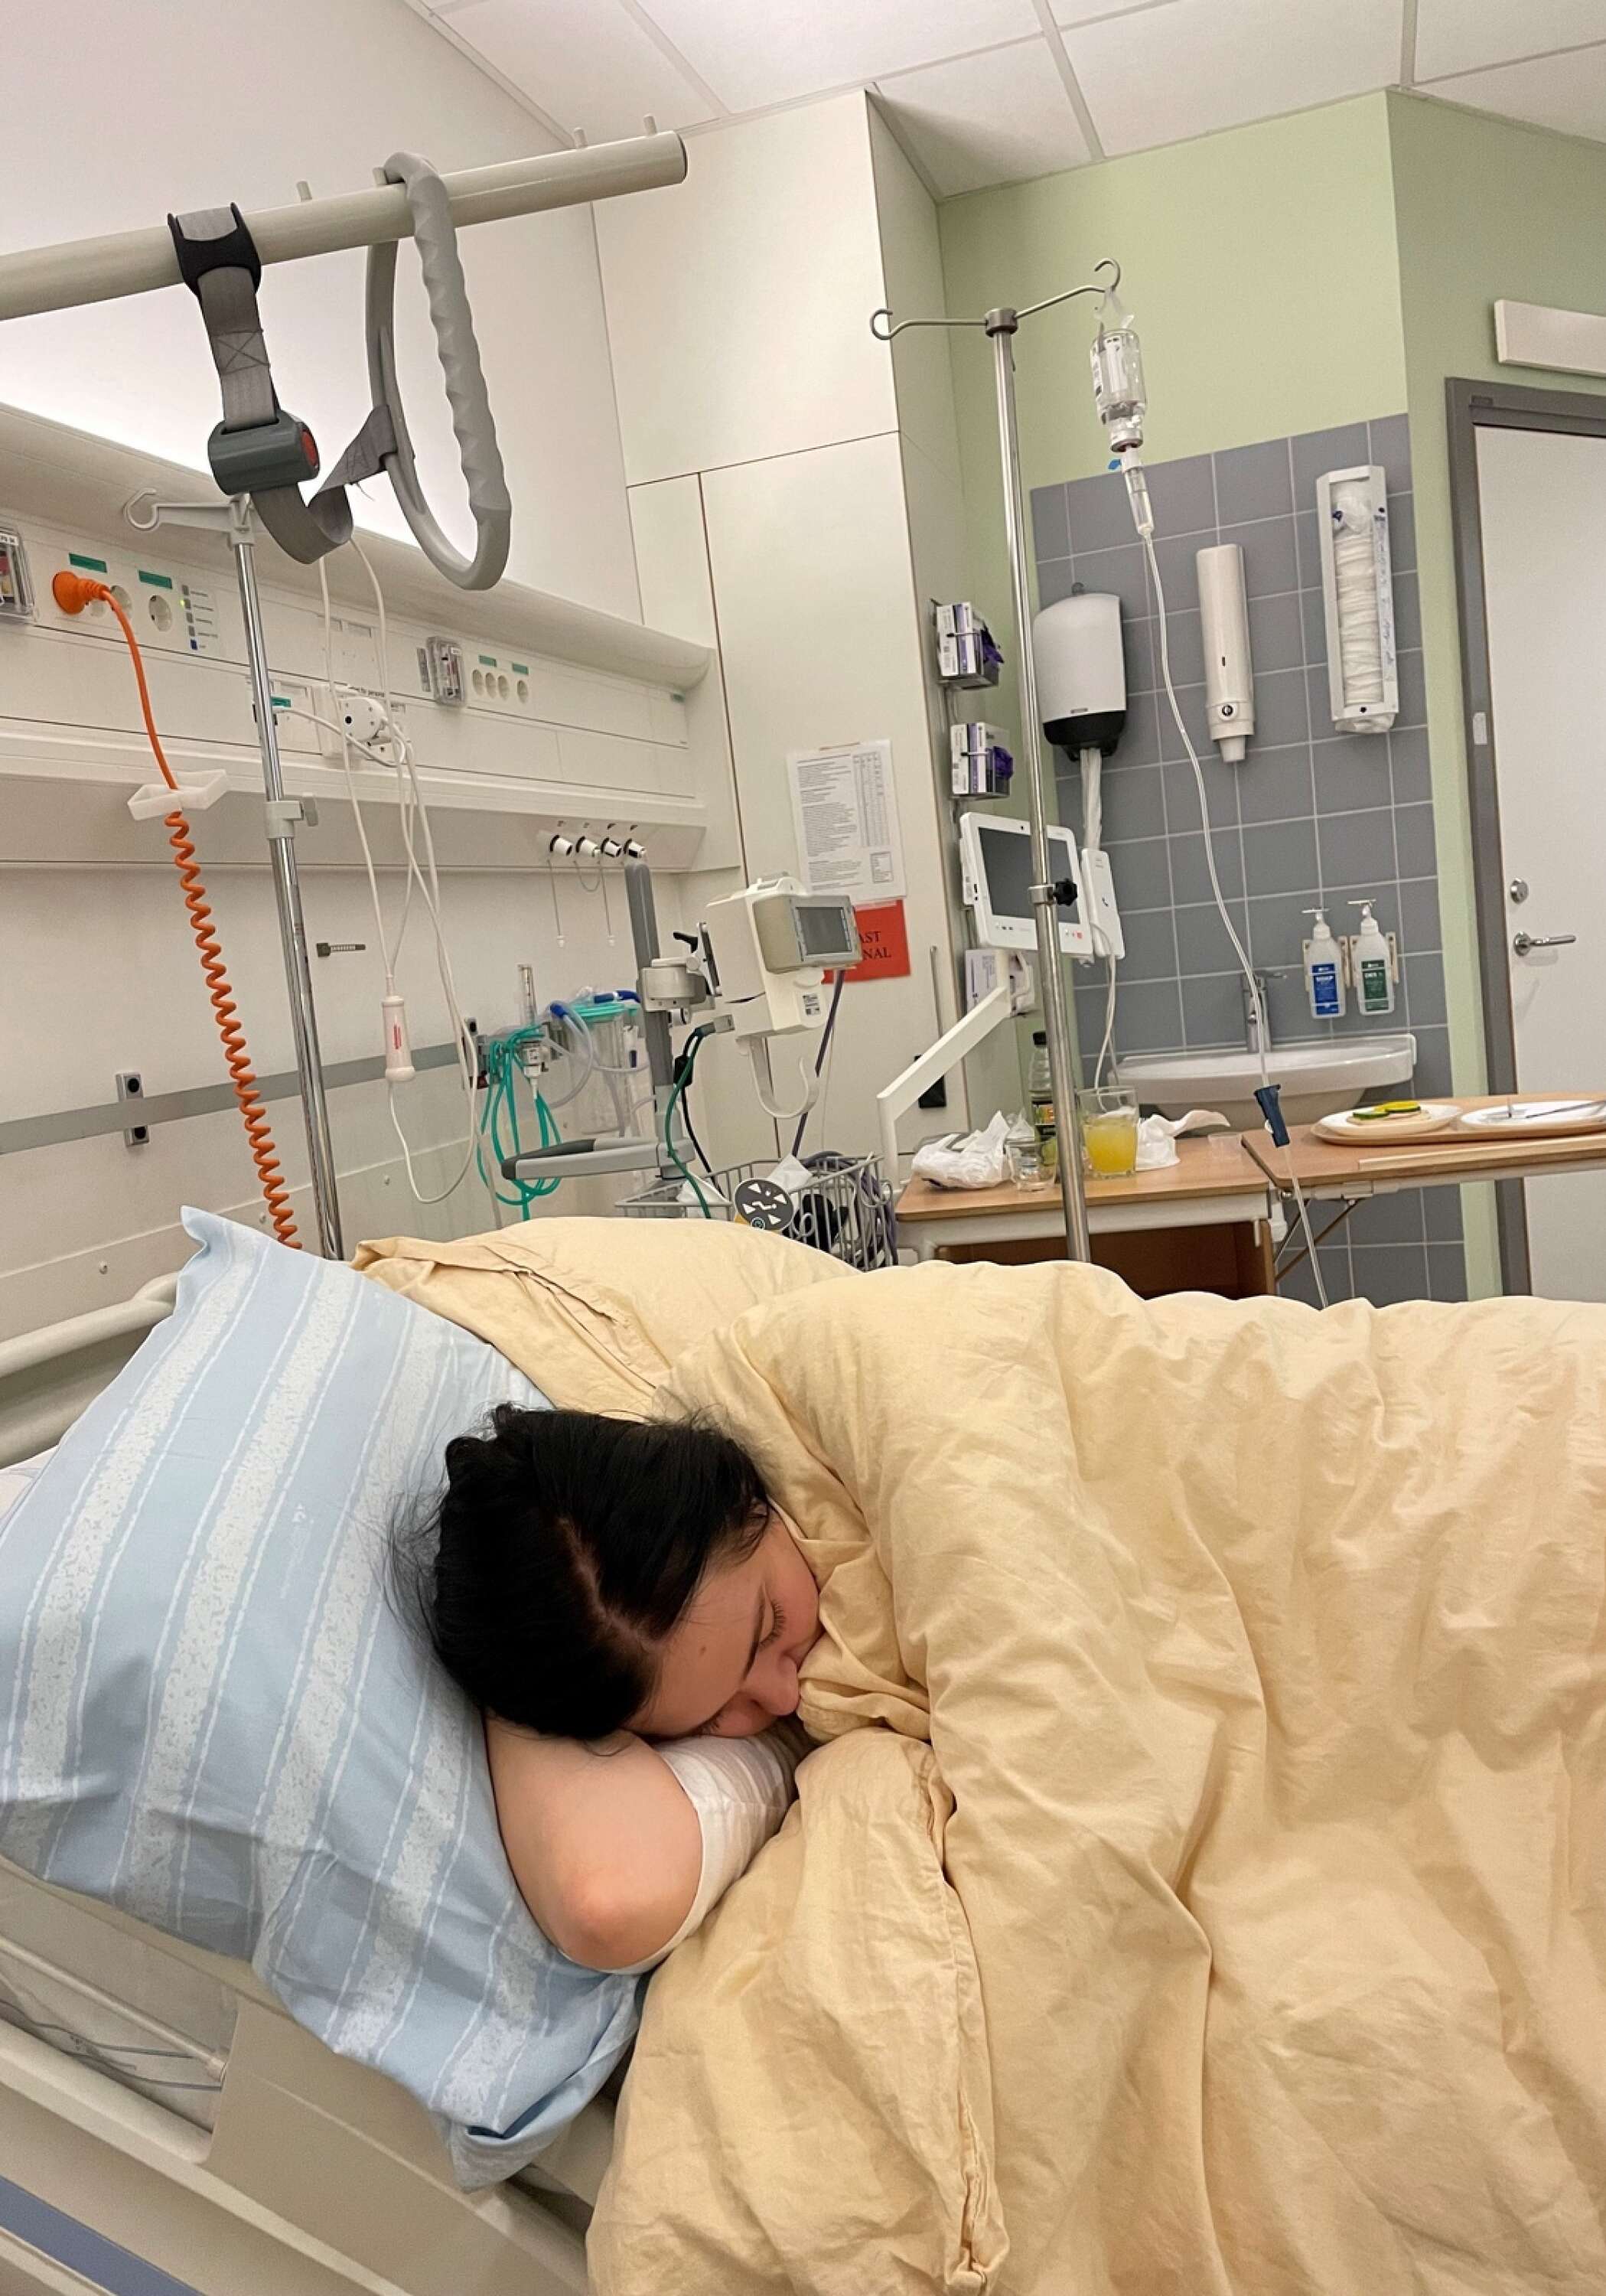 Jennys egen bild visar hur det såg ut när Alva blev inlagd på sjukhus tillsammans med sin mamma.